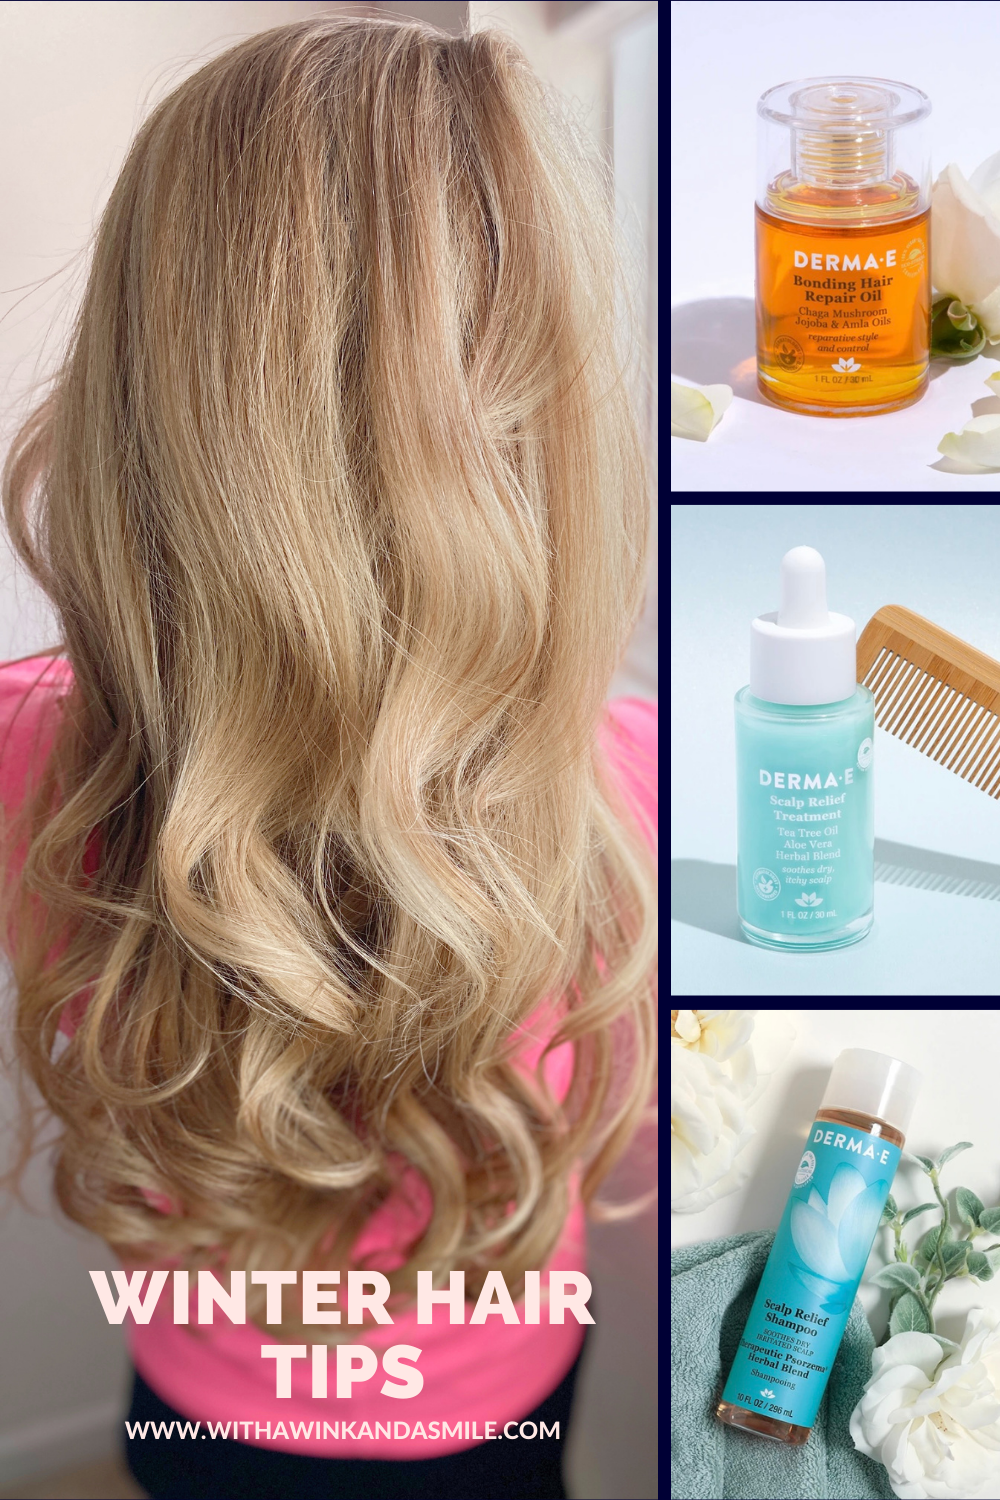 Winter hair care
Derma-e
Extend your wash
Scalp relief
Hair repair oil